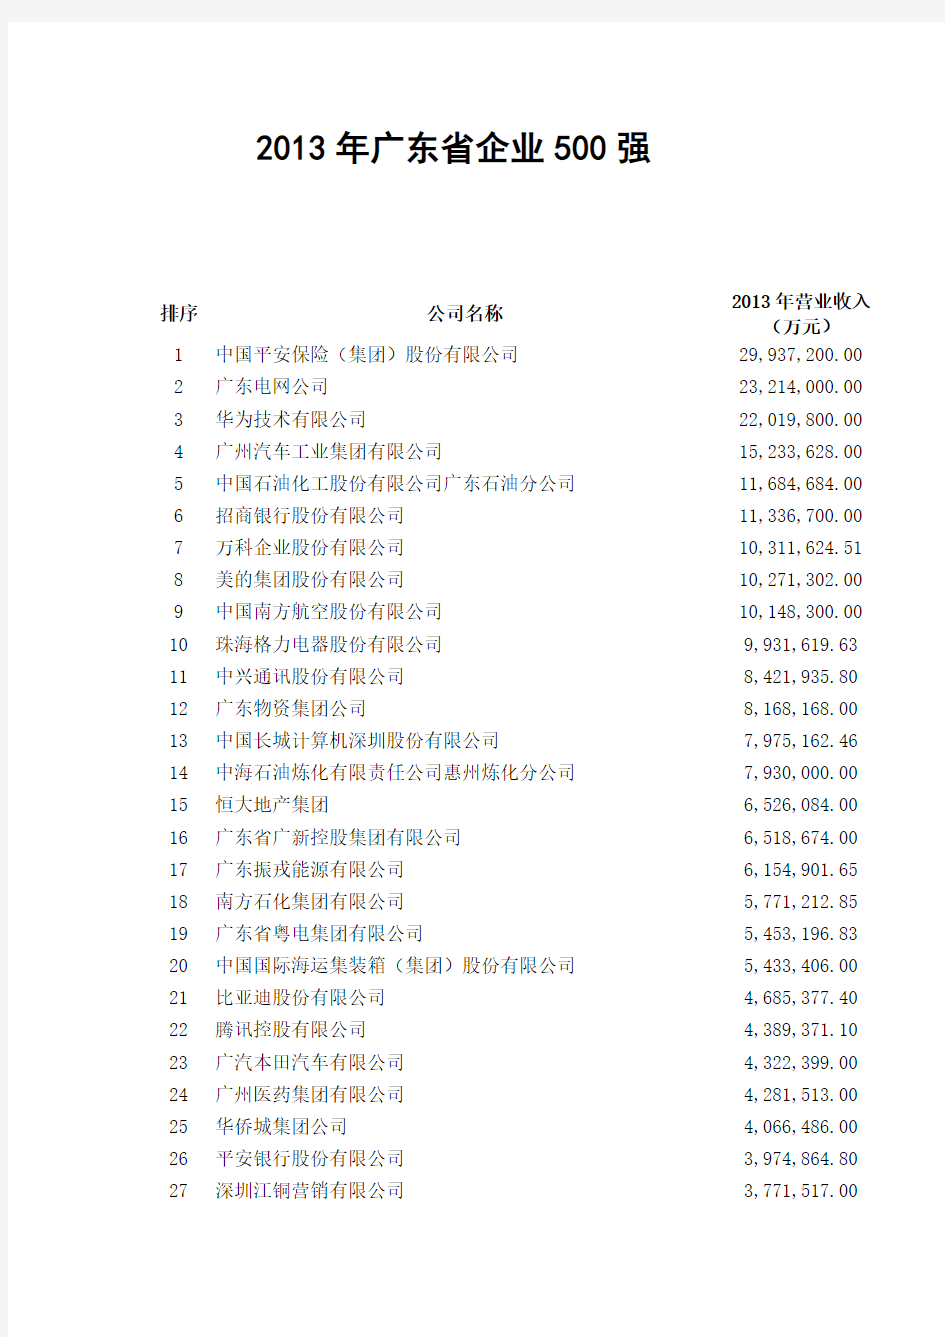 2013年广东省企业500强名单